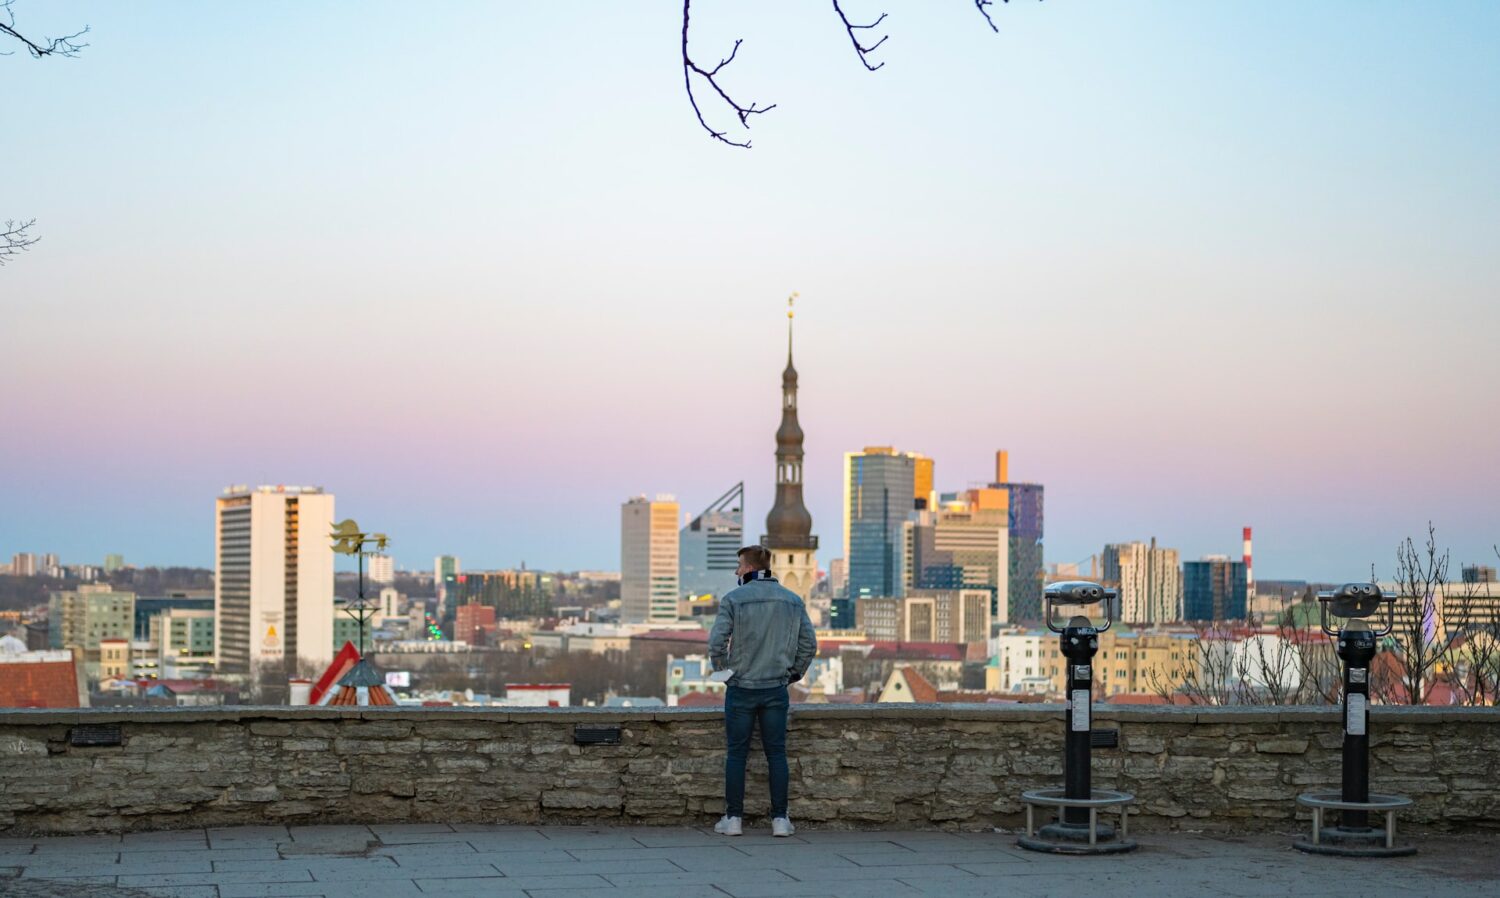 Homem olhando para a paisagem de Tallinn, com bastante construções durante o dia, ilustrando post chip celular Estônia.